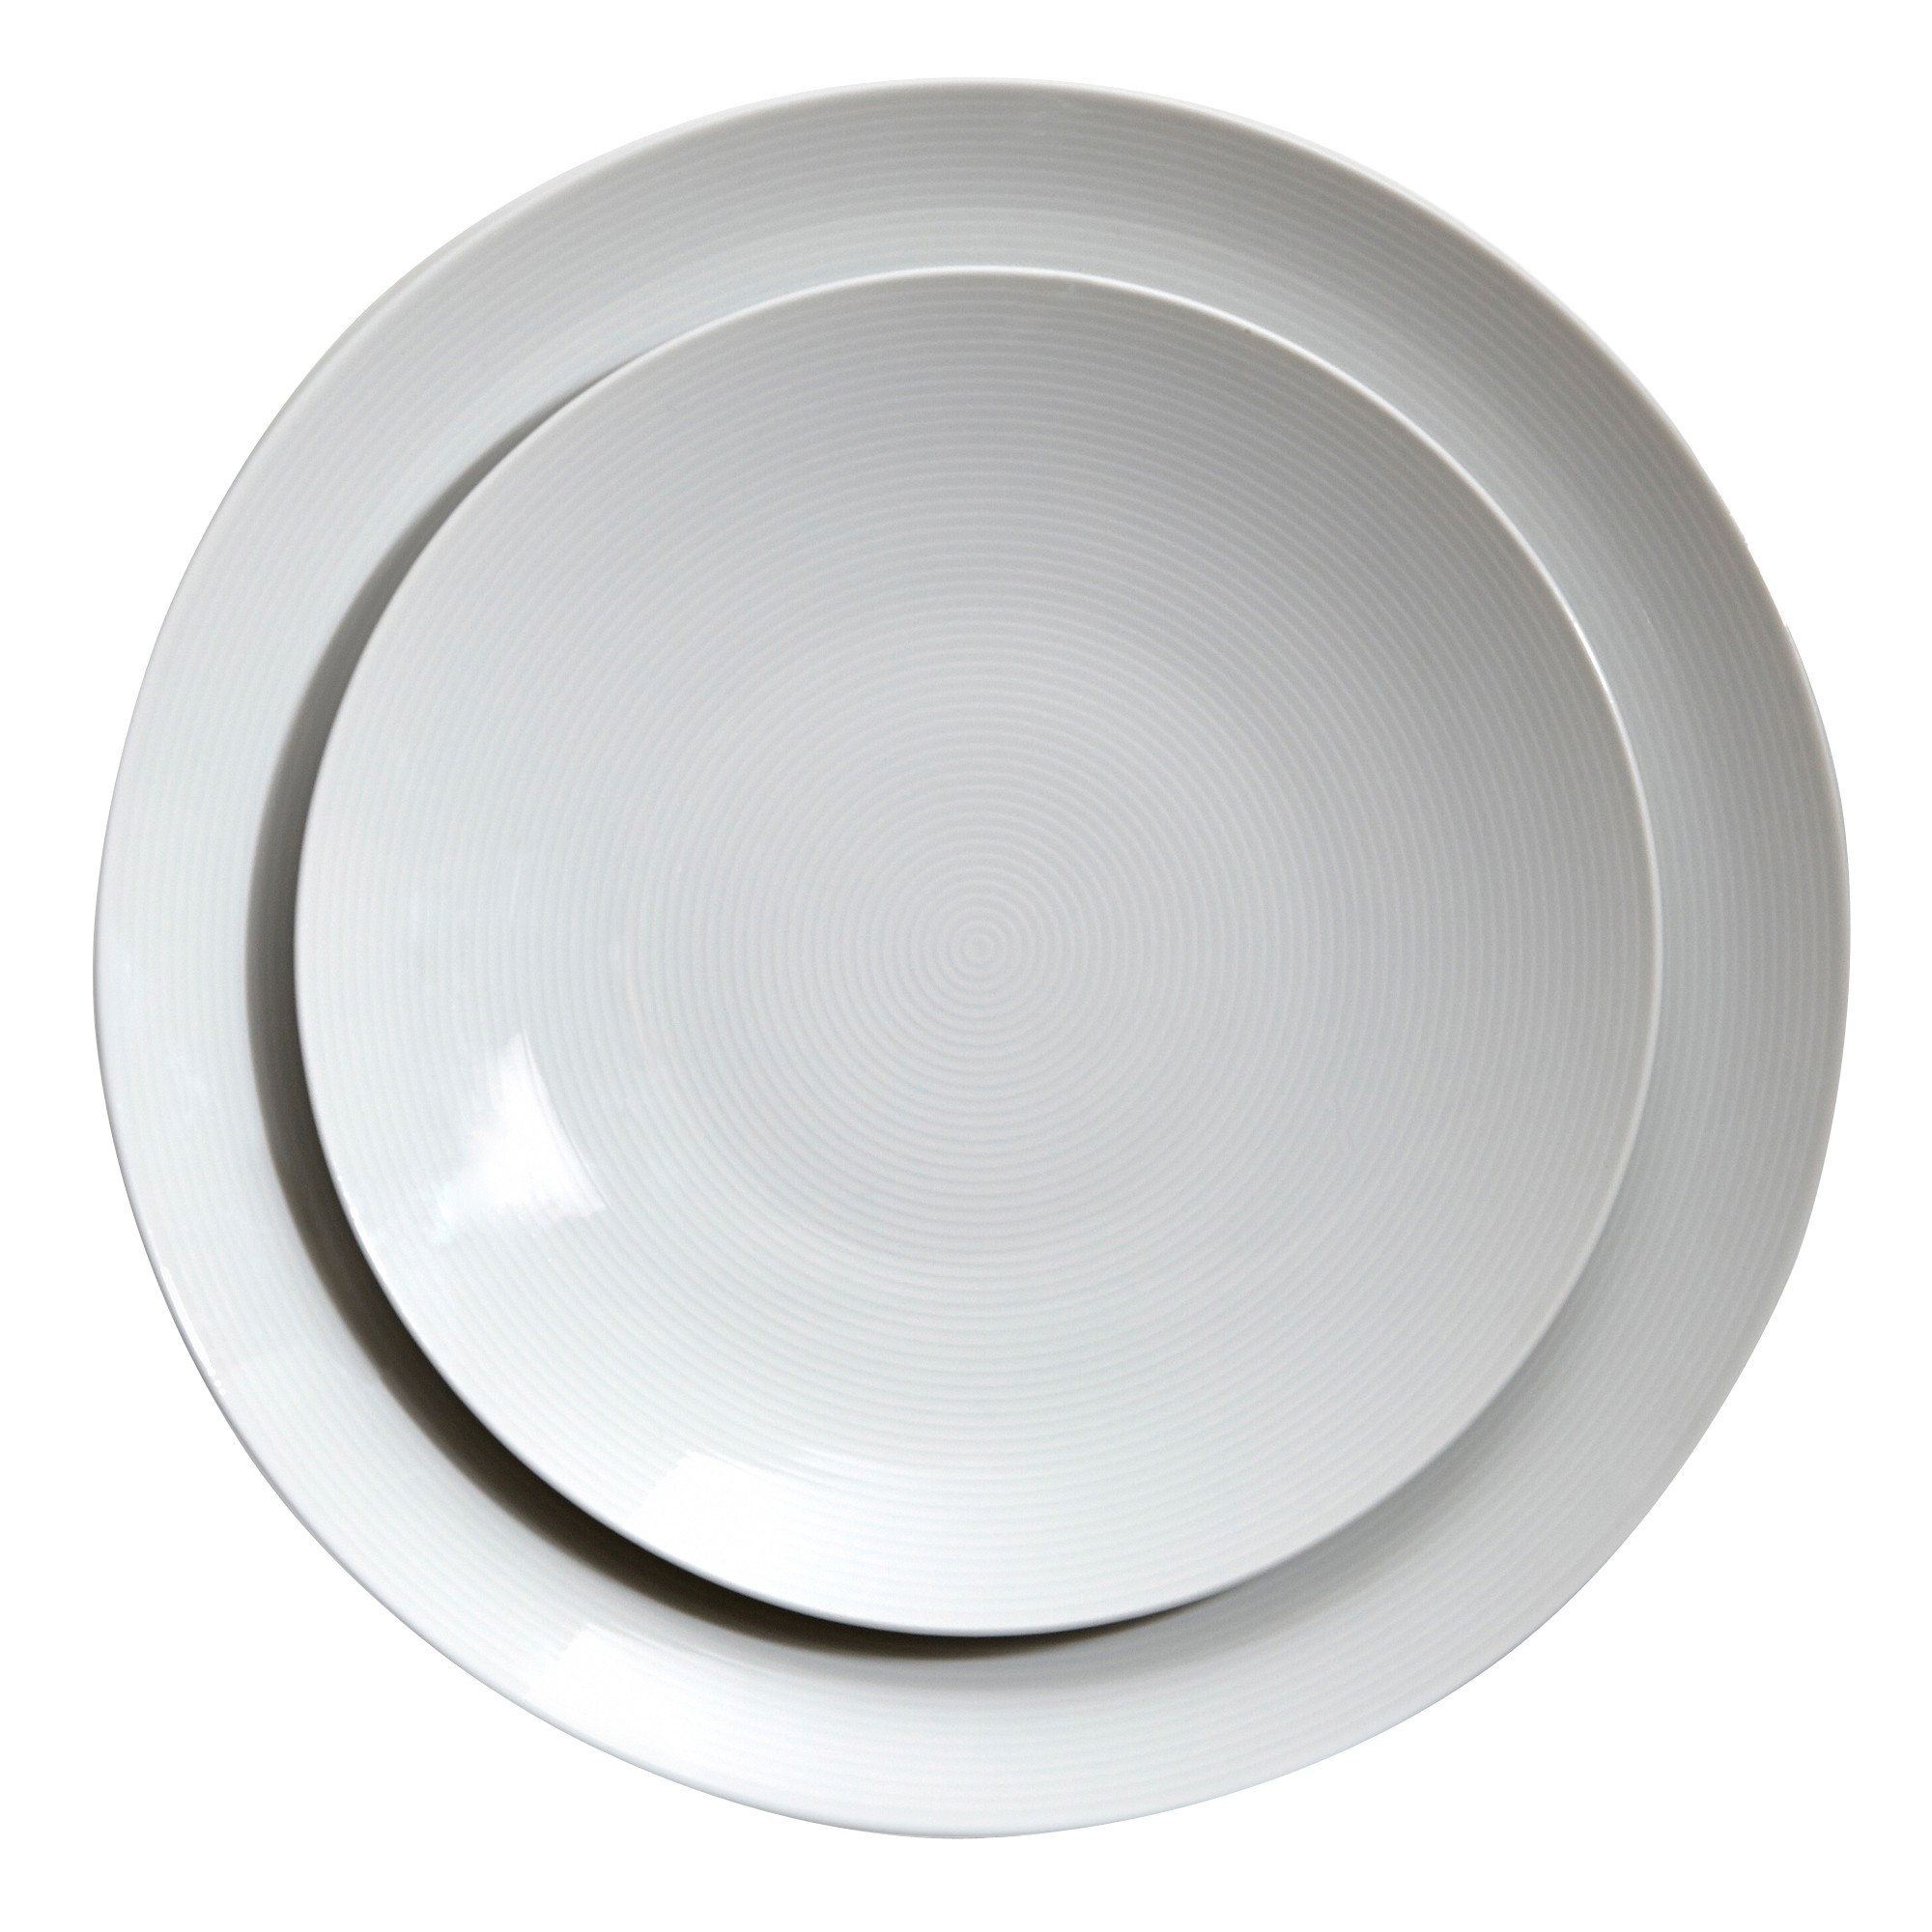 White Dinner Plates
 Thomas Loft White Porcelain Dinner Plate